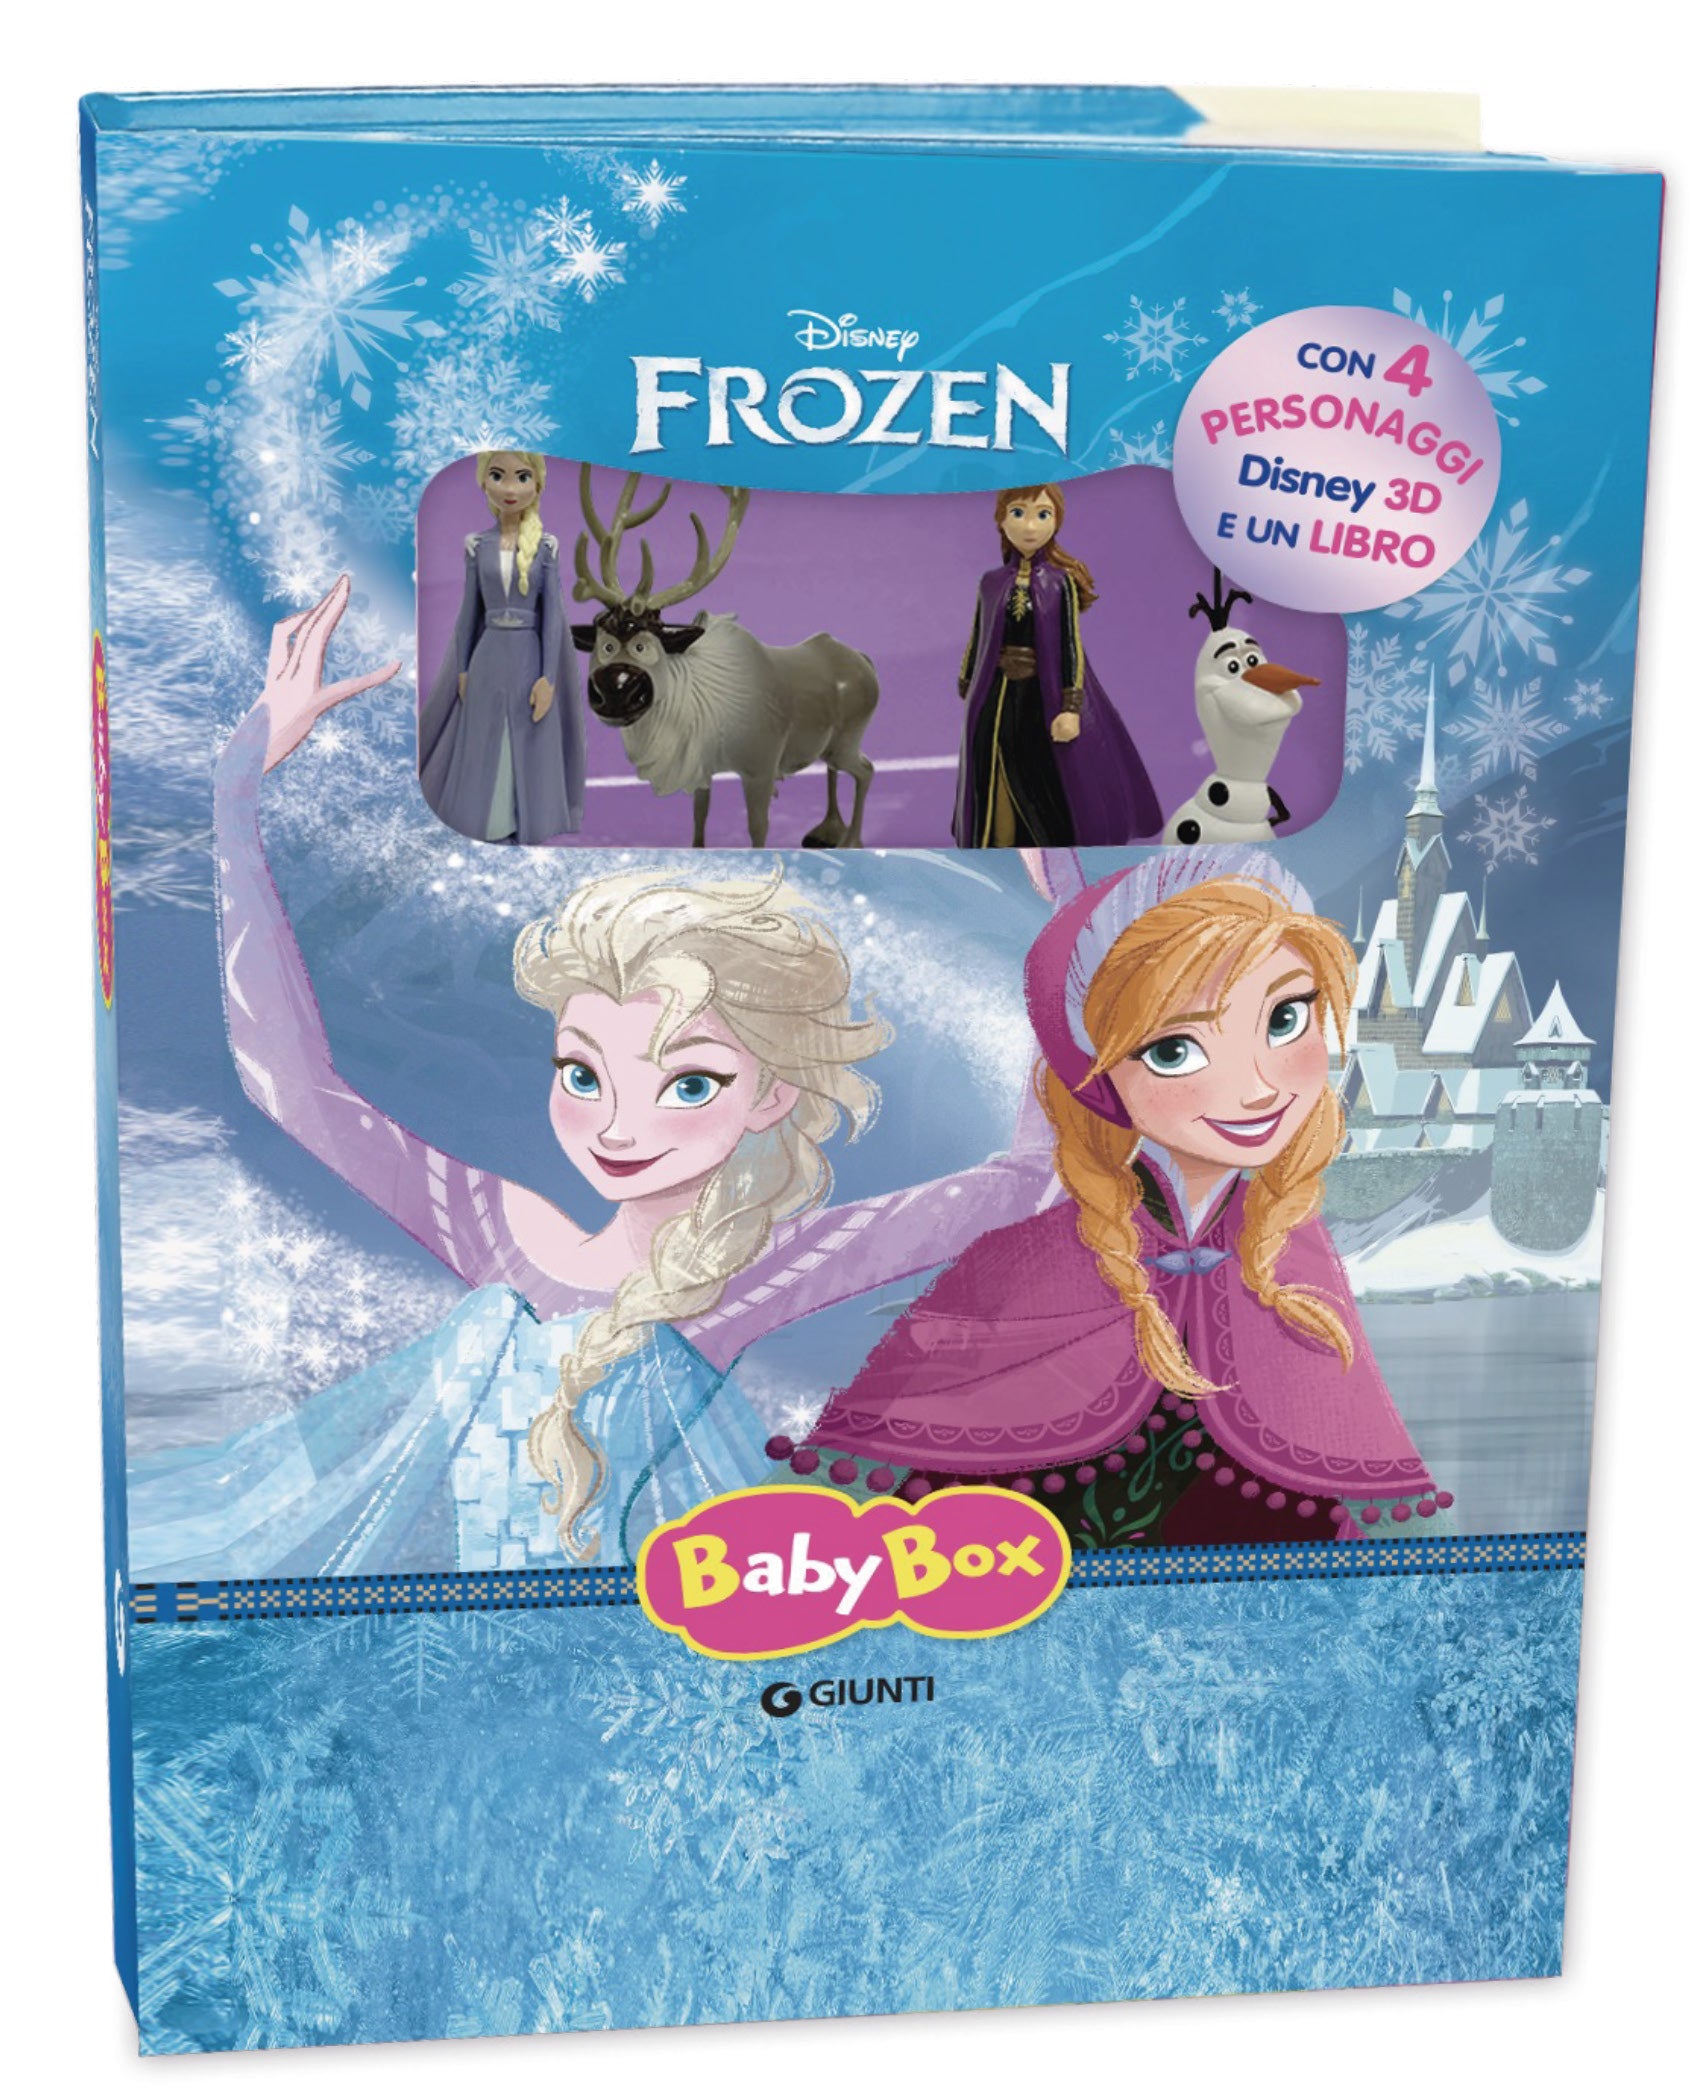 Frozen 2. Maxi libro gioca kit